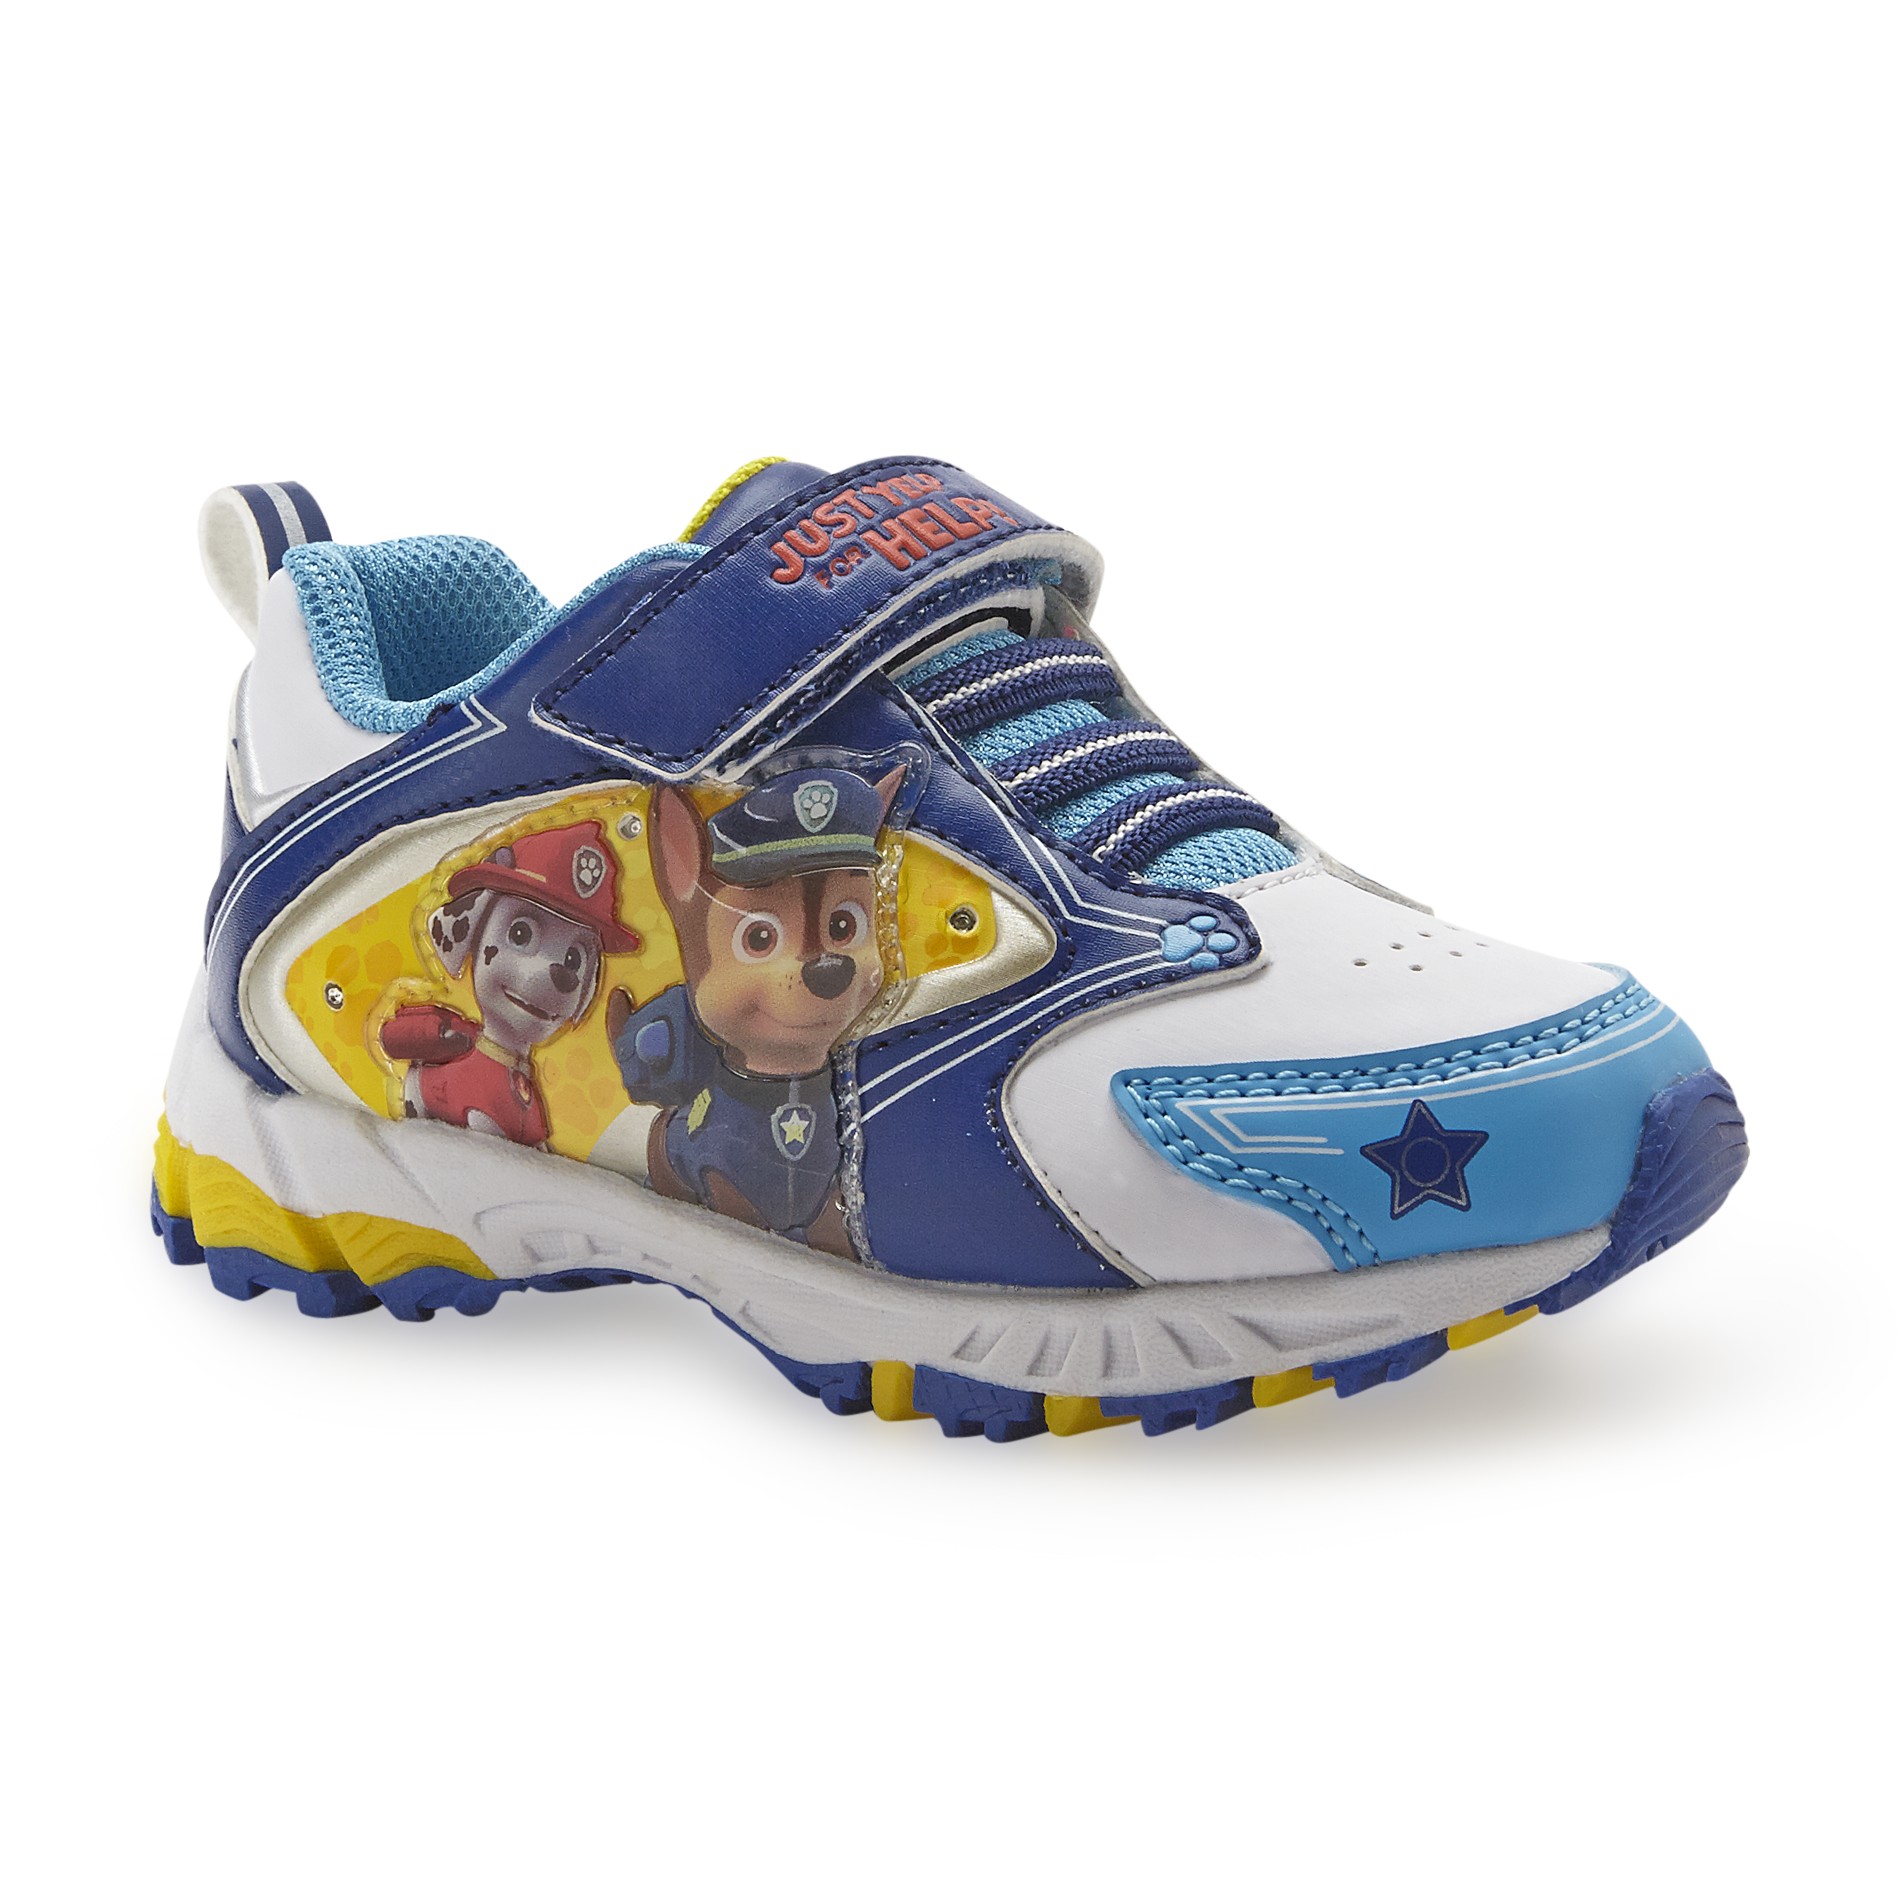 Nickelodeon Toddler Boy's Paw Patrol Athletic Shoe - Blue/White